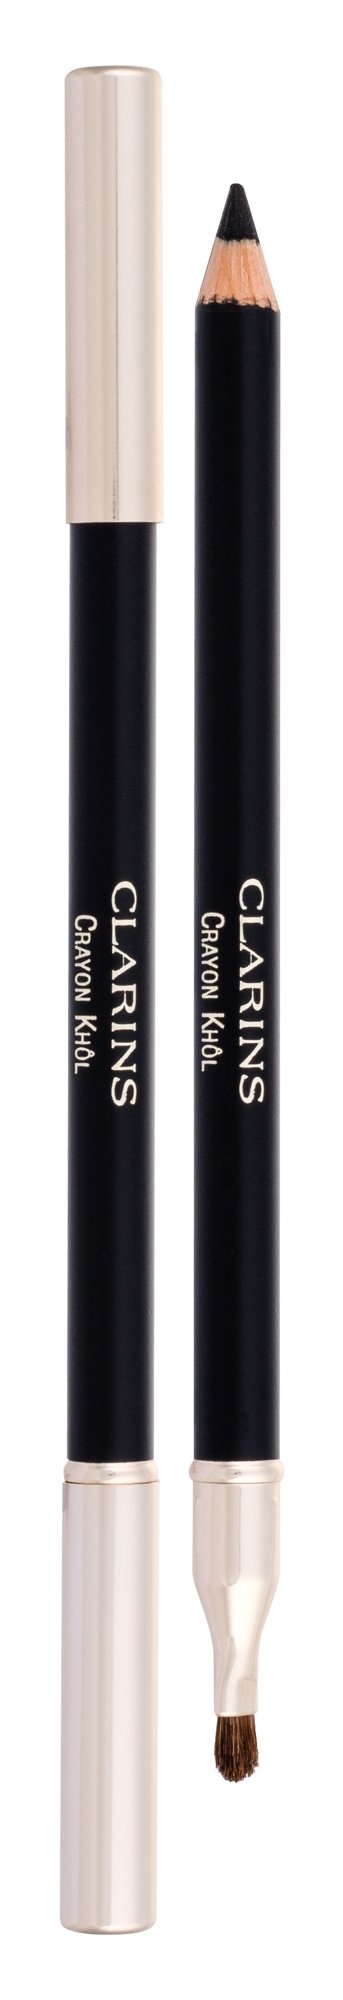 Clarins Long-Lasting Eye Pencil 1,05g akių pieštukas